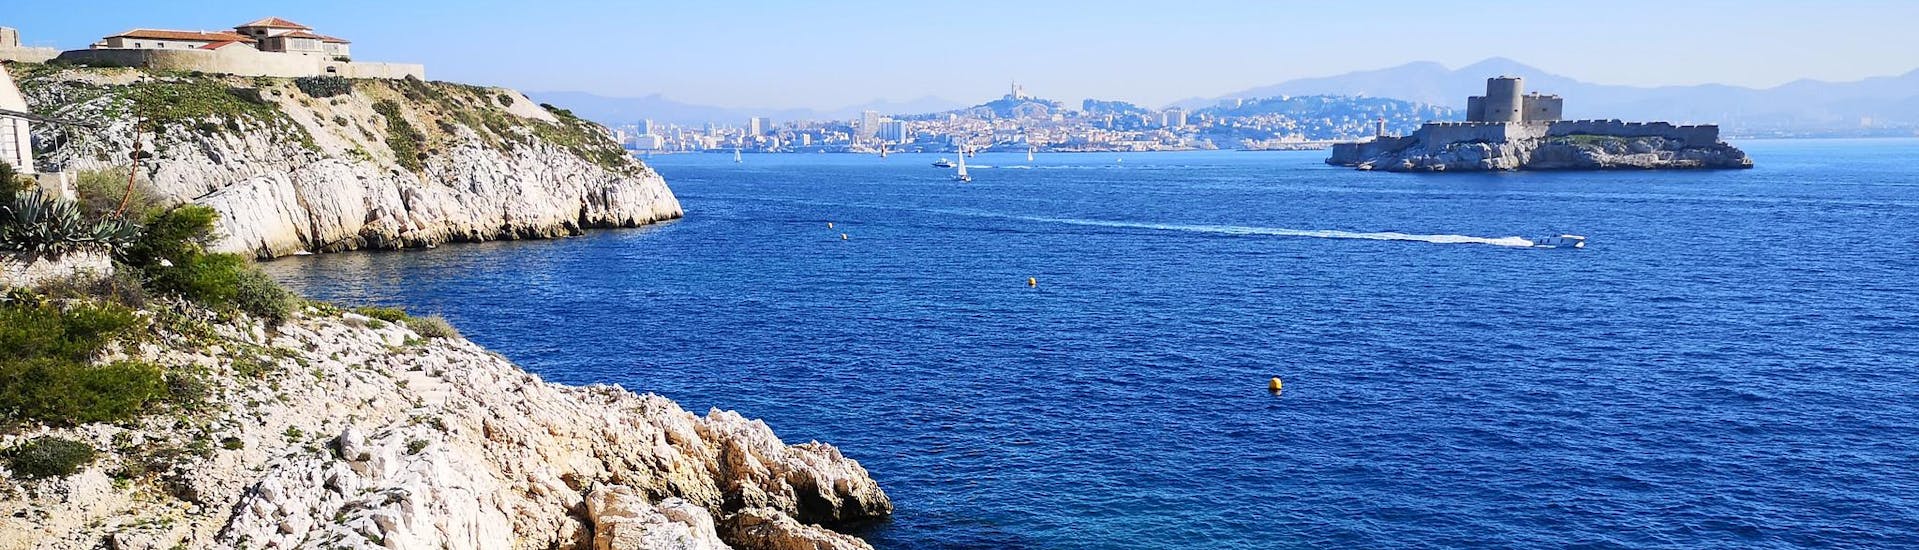 Blick auf Marseille und Château d'If von den Frioul-Inseln aus, die ein beliebtes Ziel für Bootstouren sind.